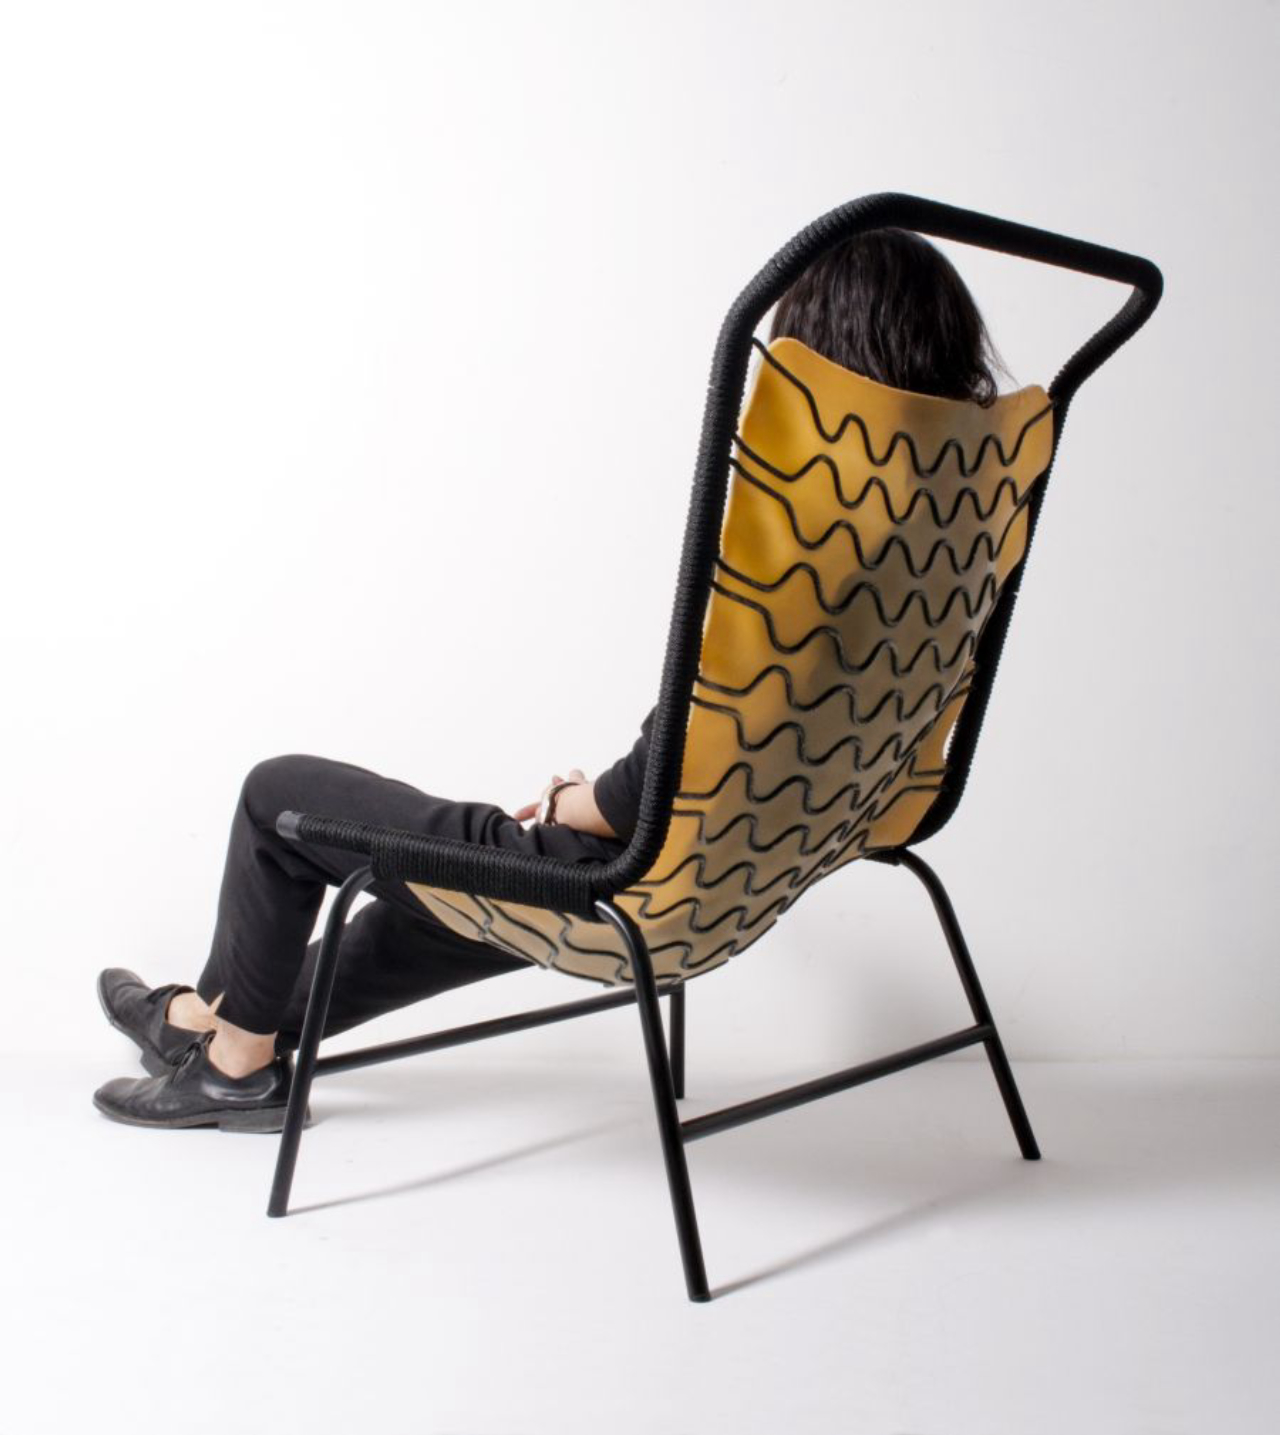 Cadeira Cellastic do japonês Studio Rope, com assento em borracha e estrutura em fibra de corda, inspirada na estética molecular das células animais.